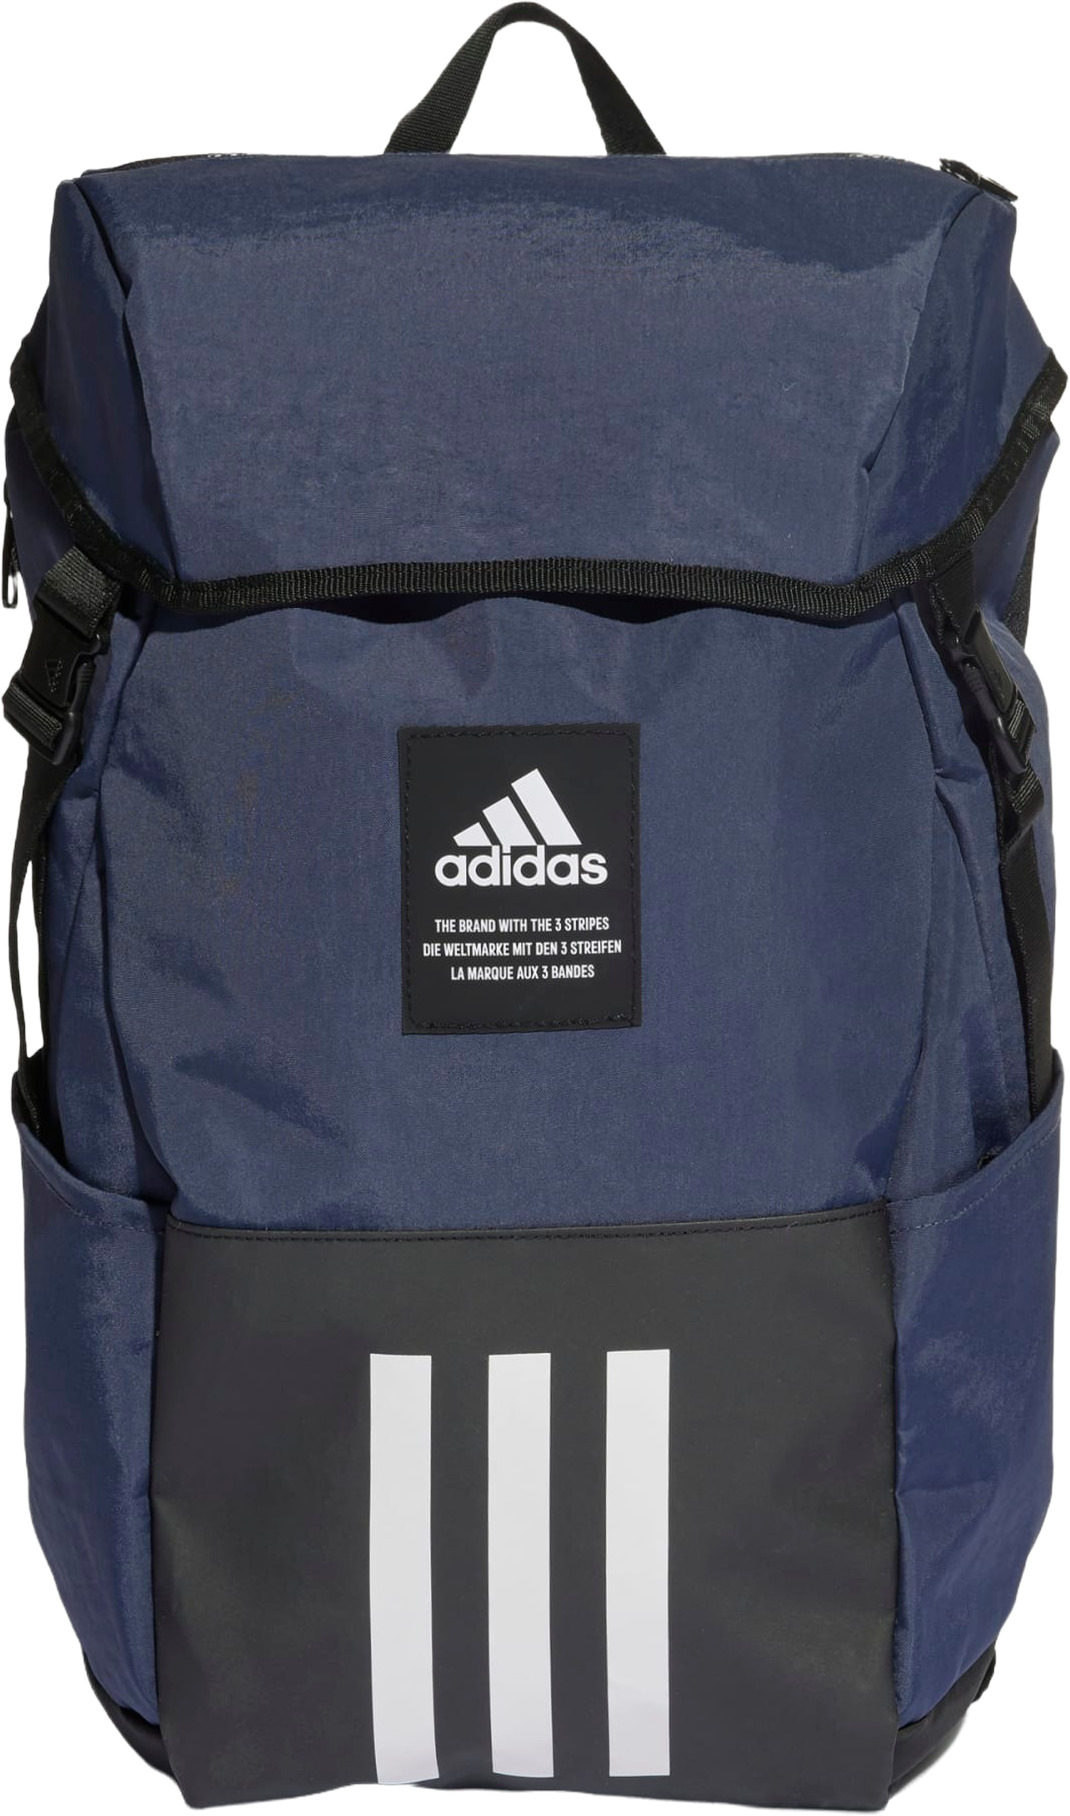 фото Рюкзак adidas 4athlts backpack, синий